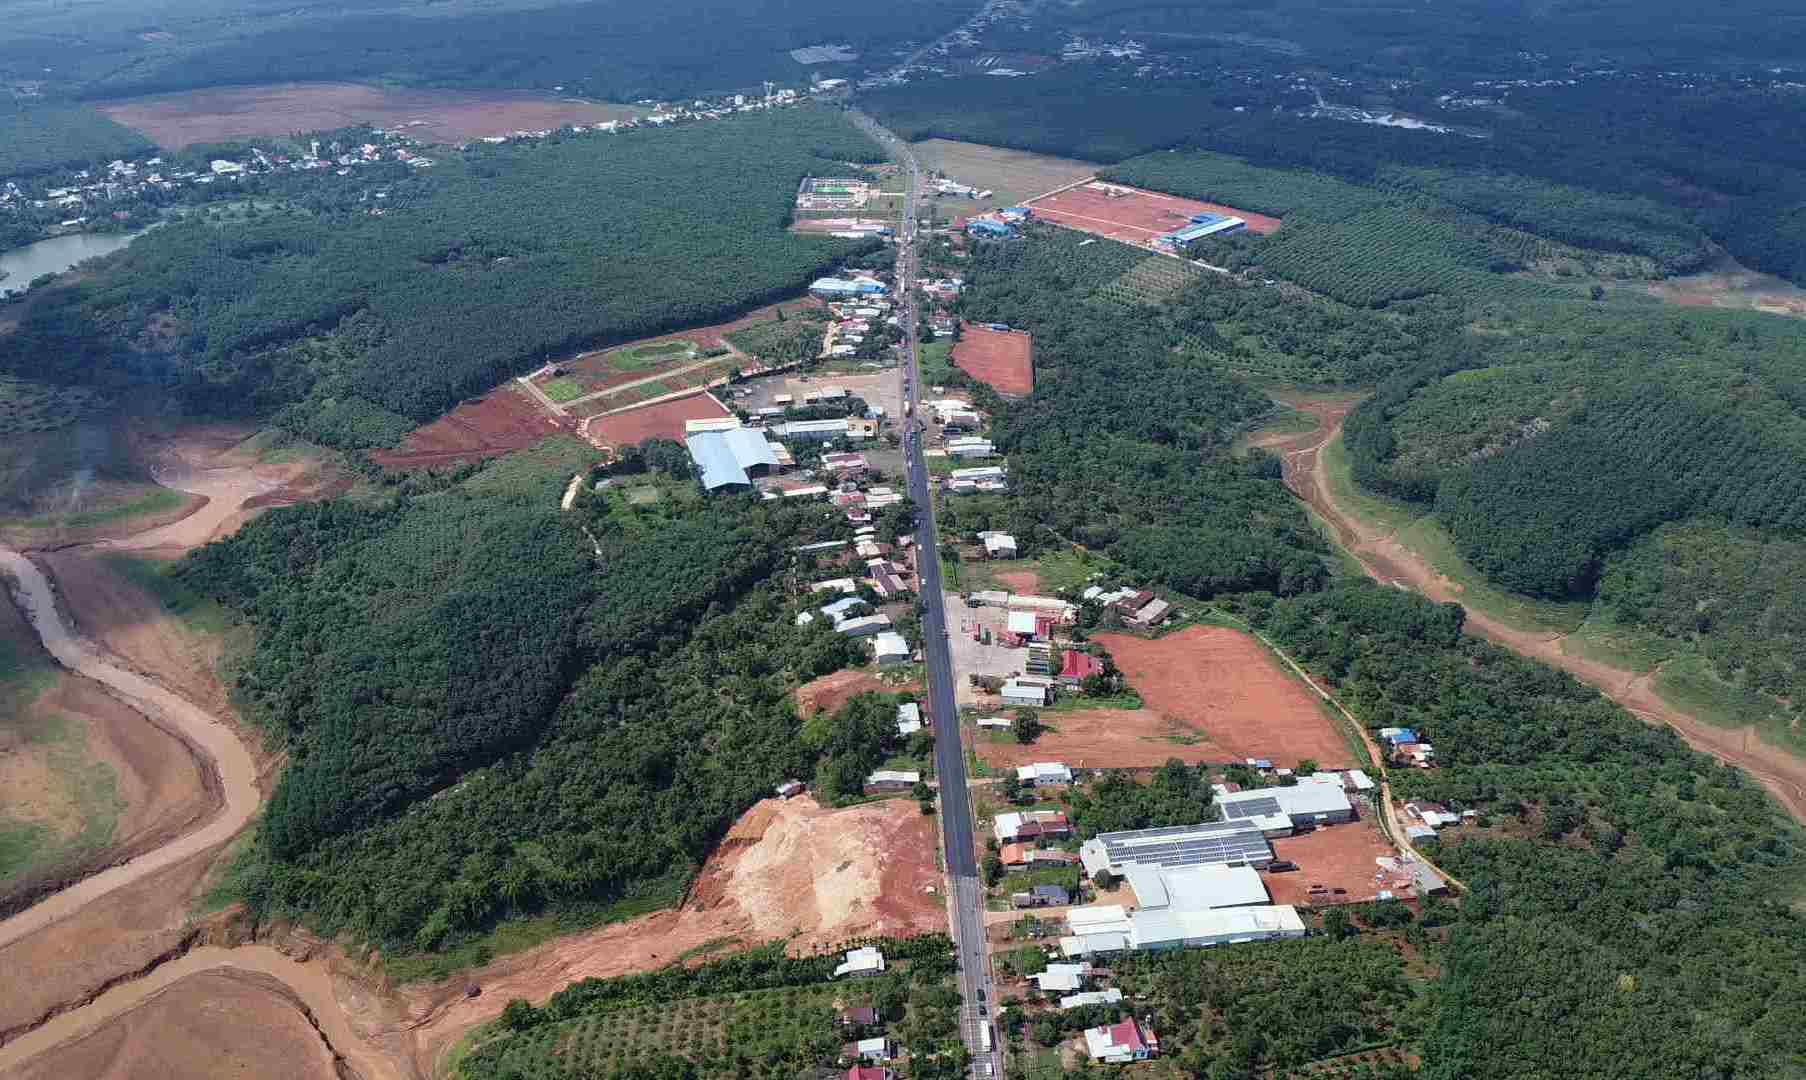 Đây là hình ảnh quốc lộ 14 qua địa bàn tỉnh Bình Phước. Tuyến giao thông huyết mạch kết nối Bình Phước với các tỉnh Tây Nguyên và khu vực Đông Nam Bộ.